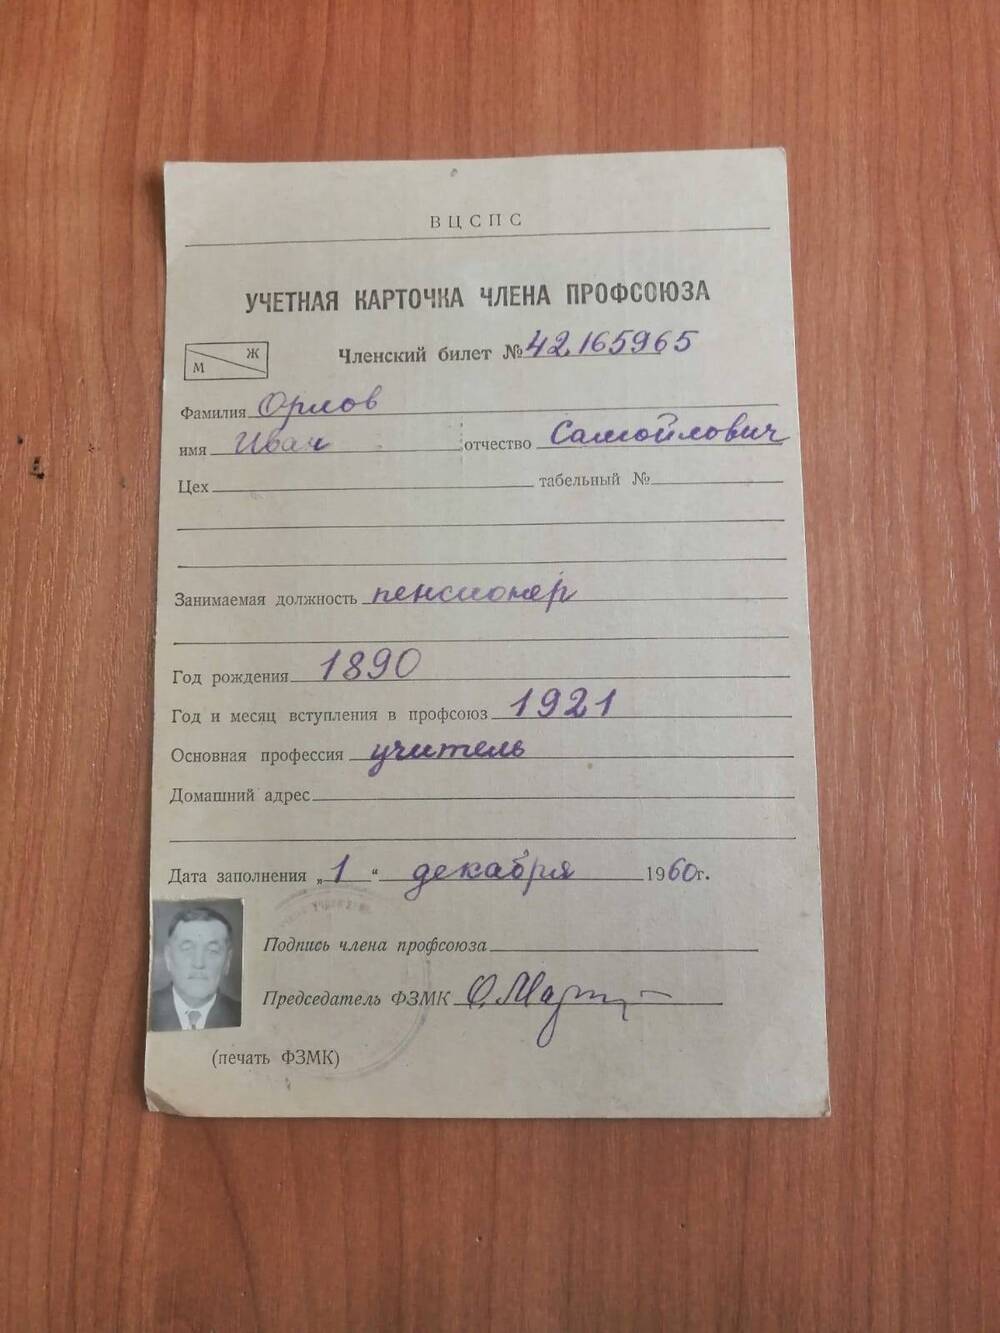 Учетная карточка члена профсоюза. Членский билет №42165965 Орлова Ивана Самойловича.